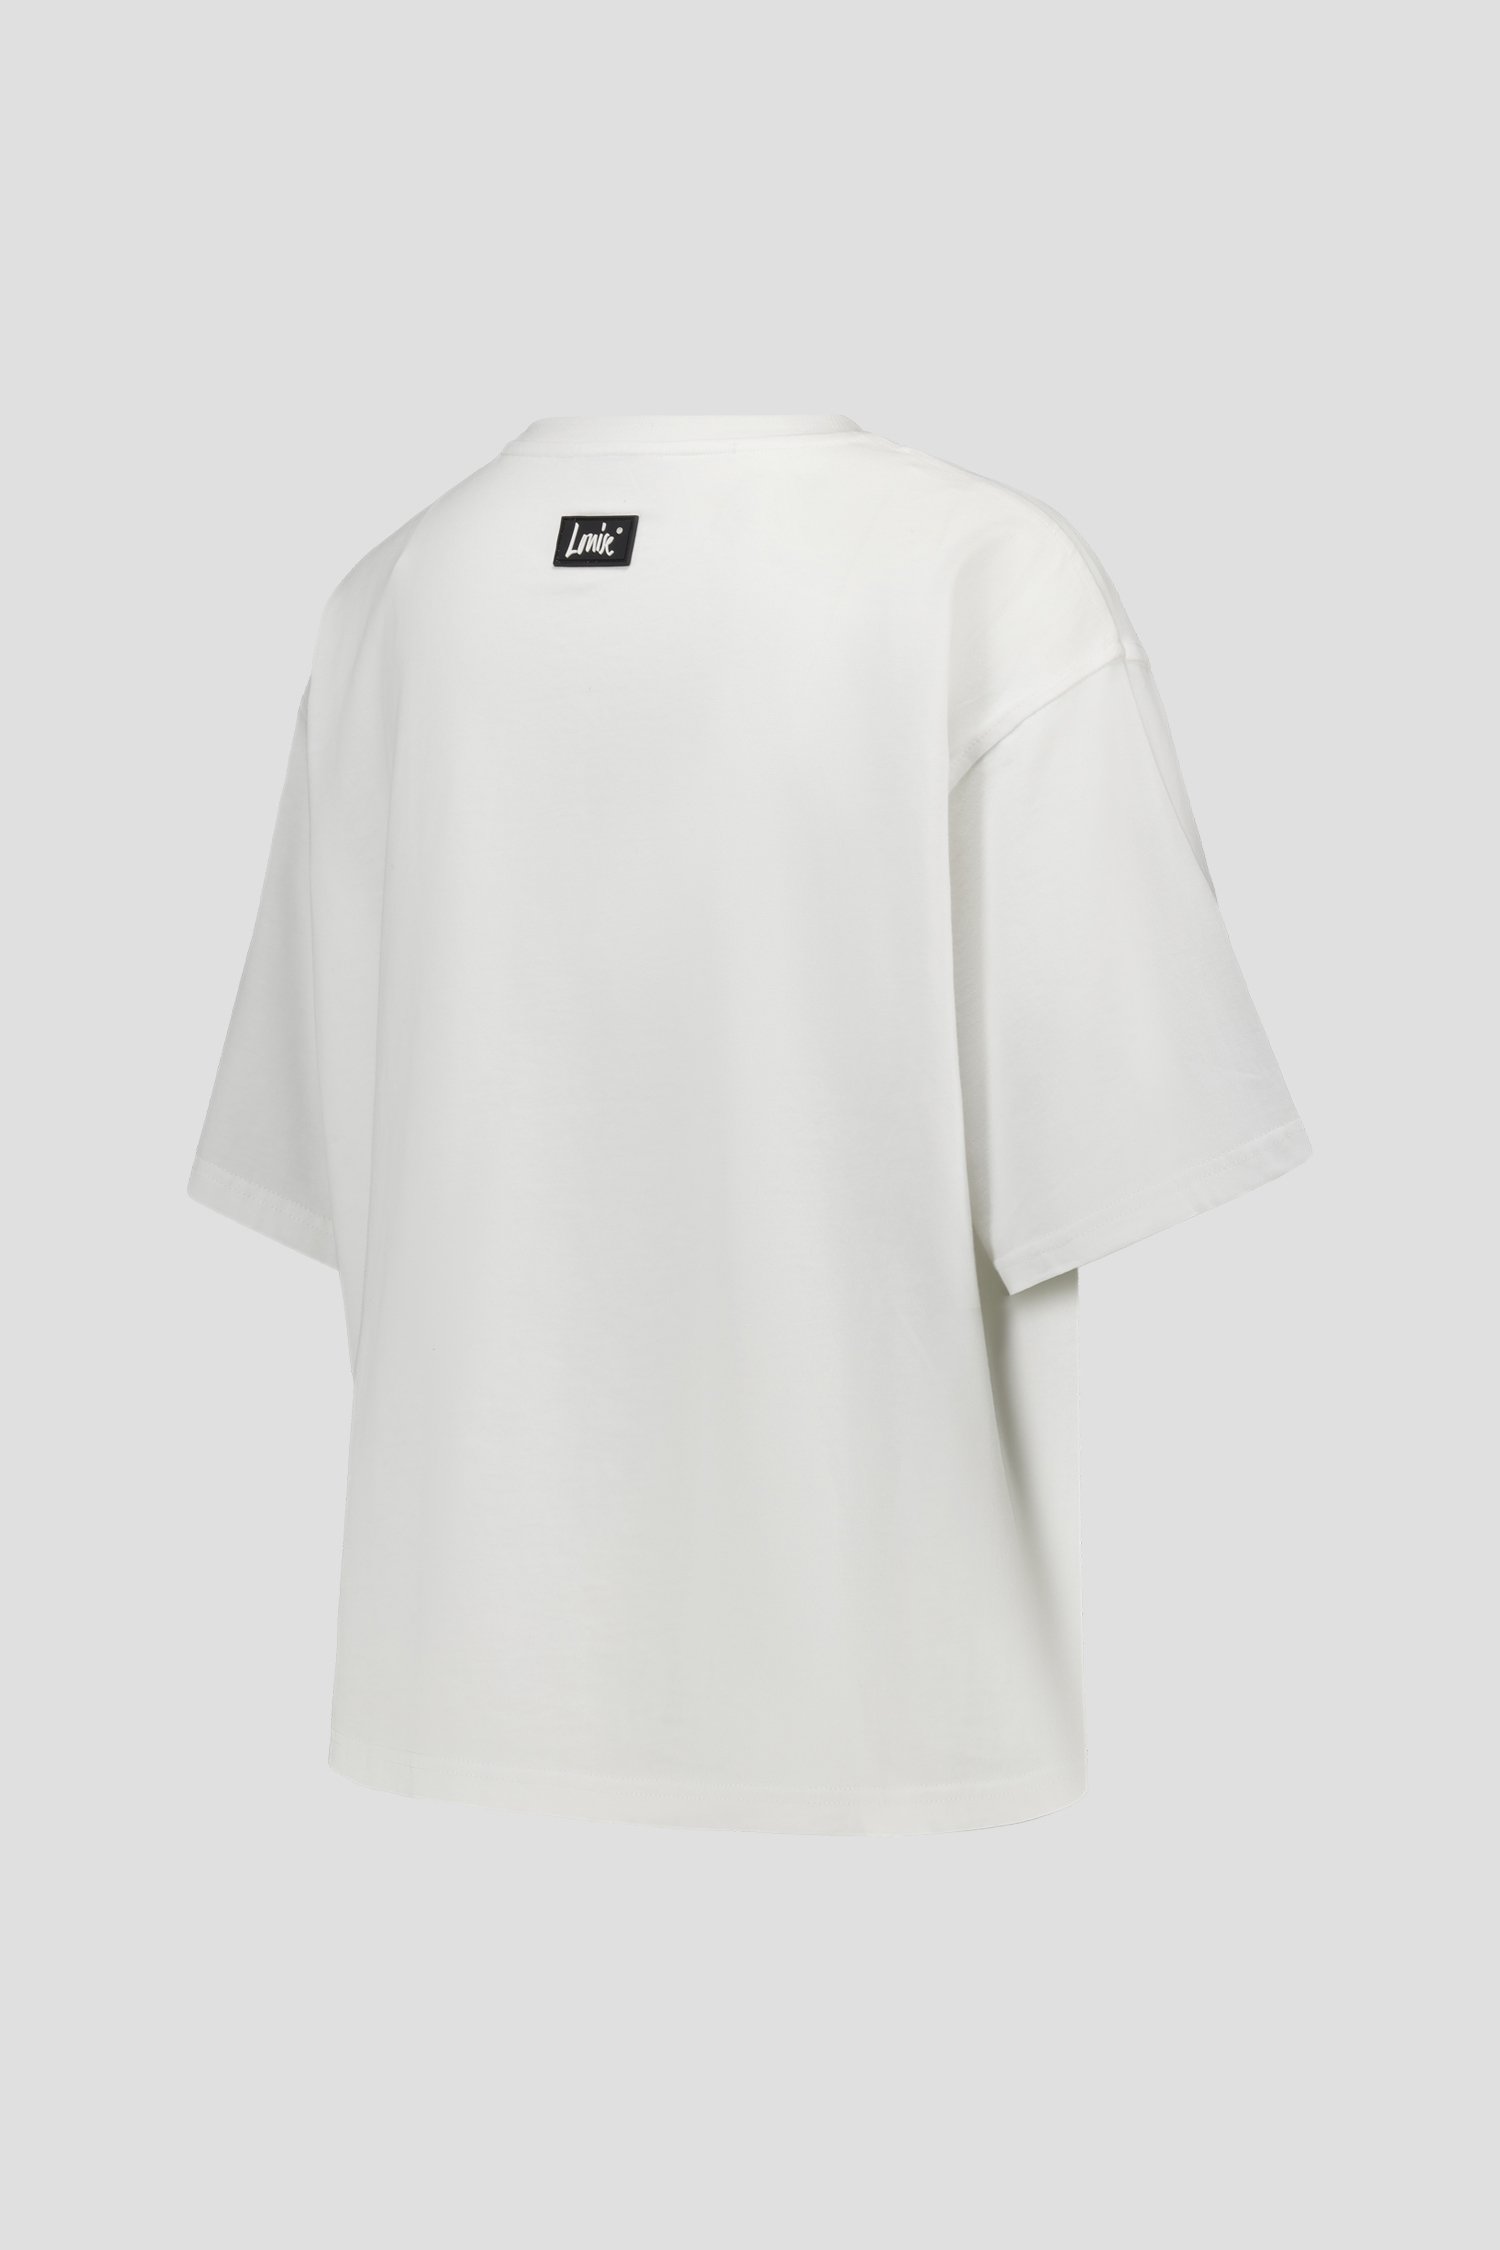 Oversized wit T-shirt van Louise voor Dames